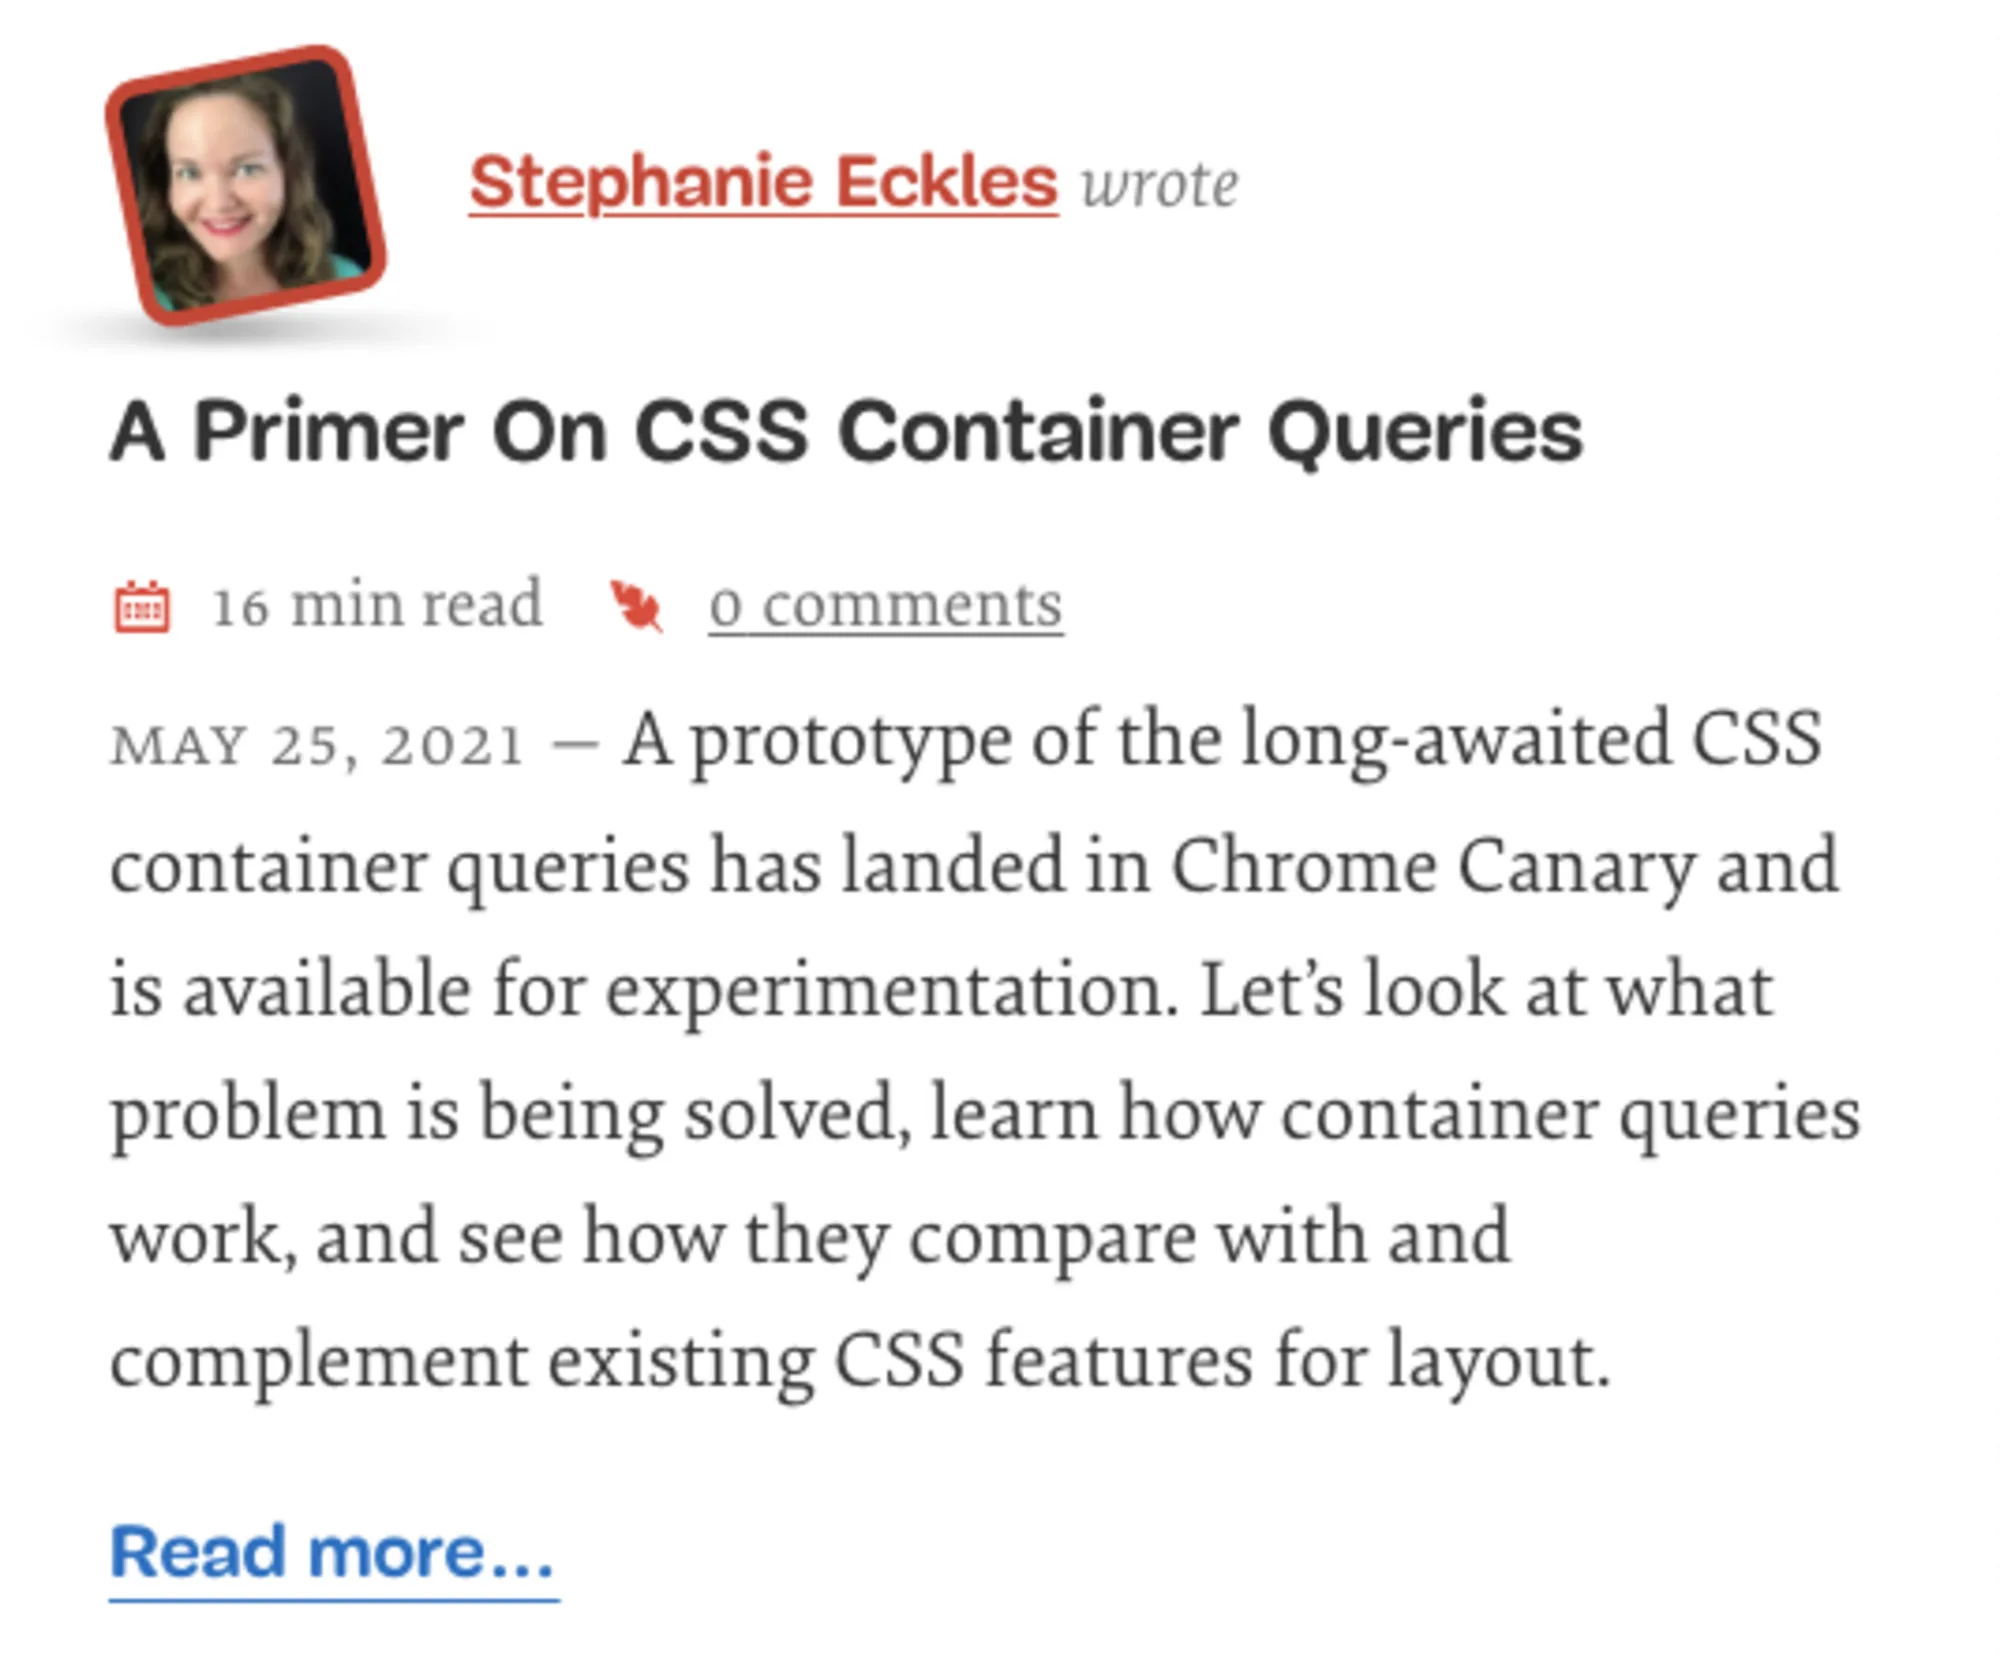 Введение в контейнерные запросы CSS